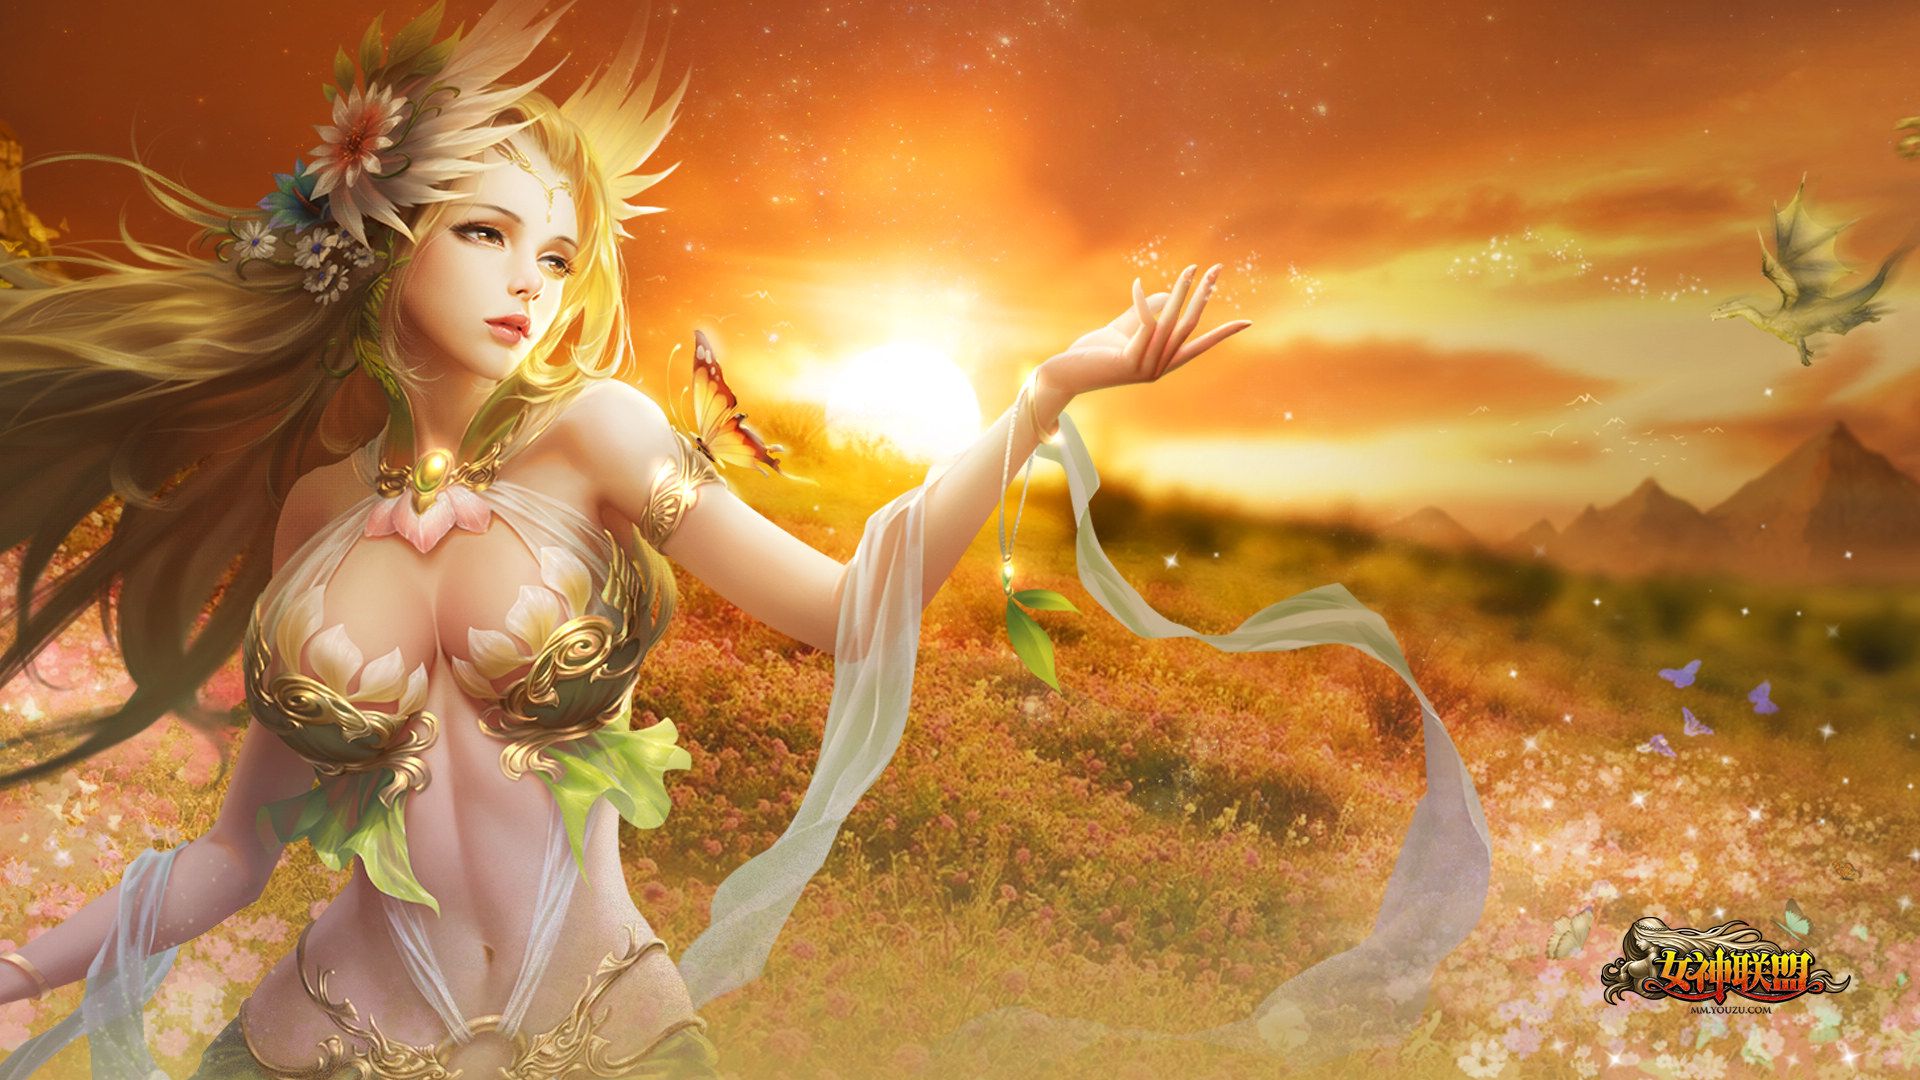 魔幻风格RPG网页游戏女神联盟各类女神高清壁纸